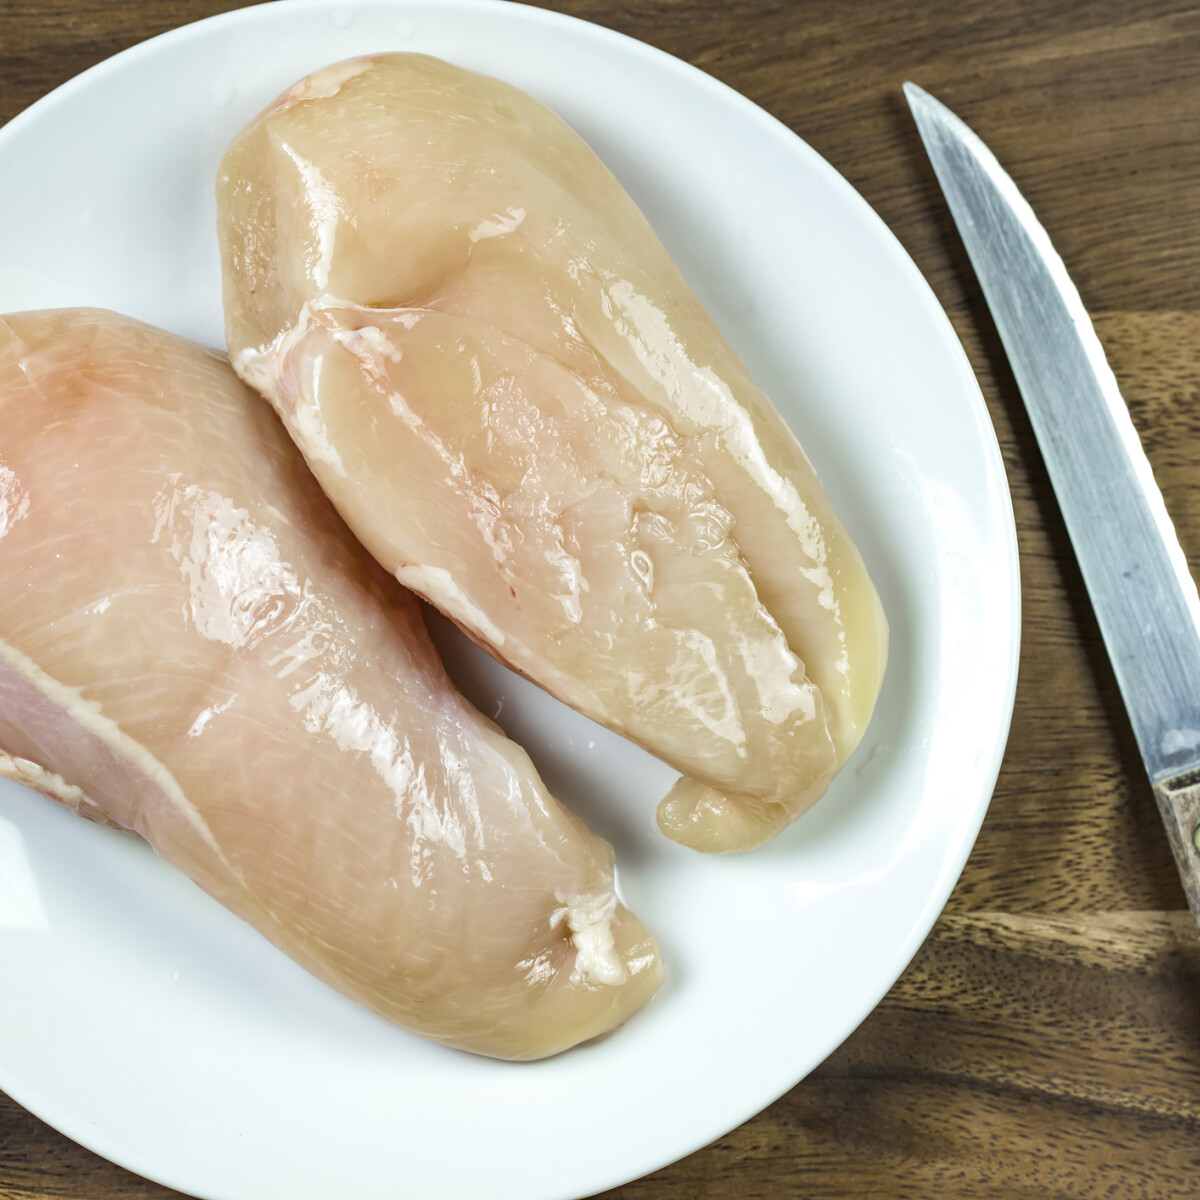 Mossuk vagy ne mossuk a csirkehúst? Itt egy biztonságos tipp